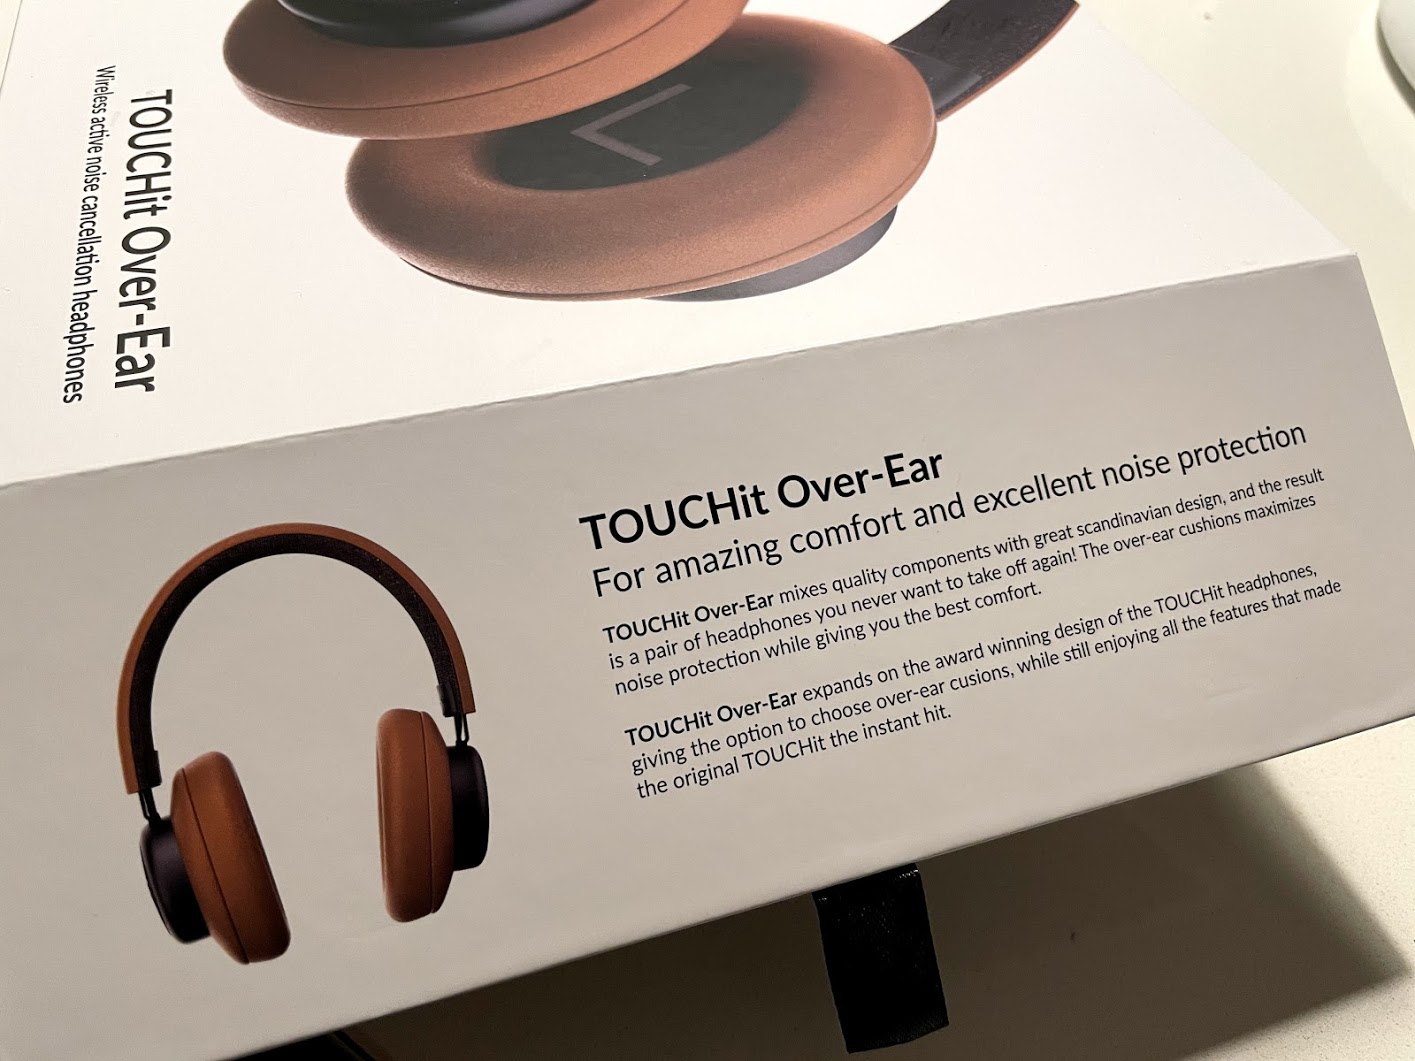 test af sackit touchit over-ear høretelefoner med støjreduktion ANC active noise cancellation hørebøffer støjdæmpning erfaring anmeldelse af